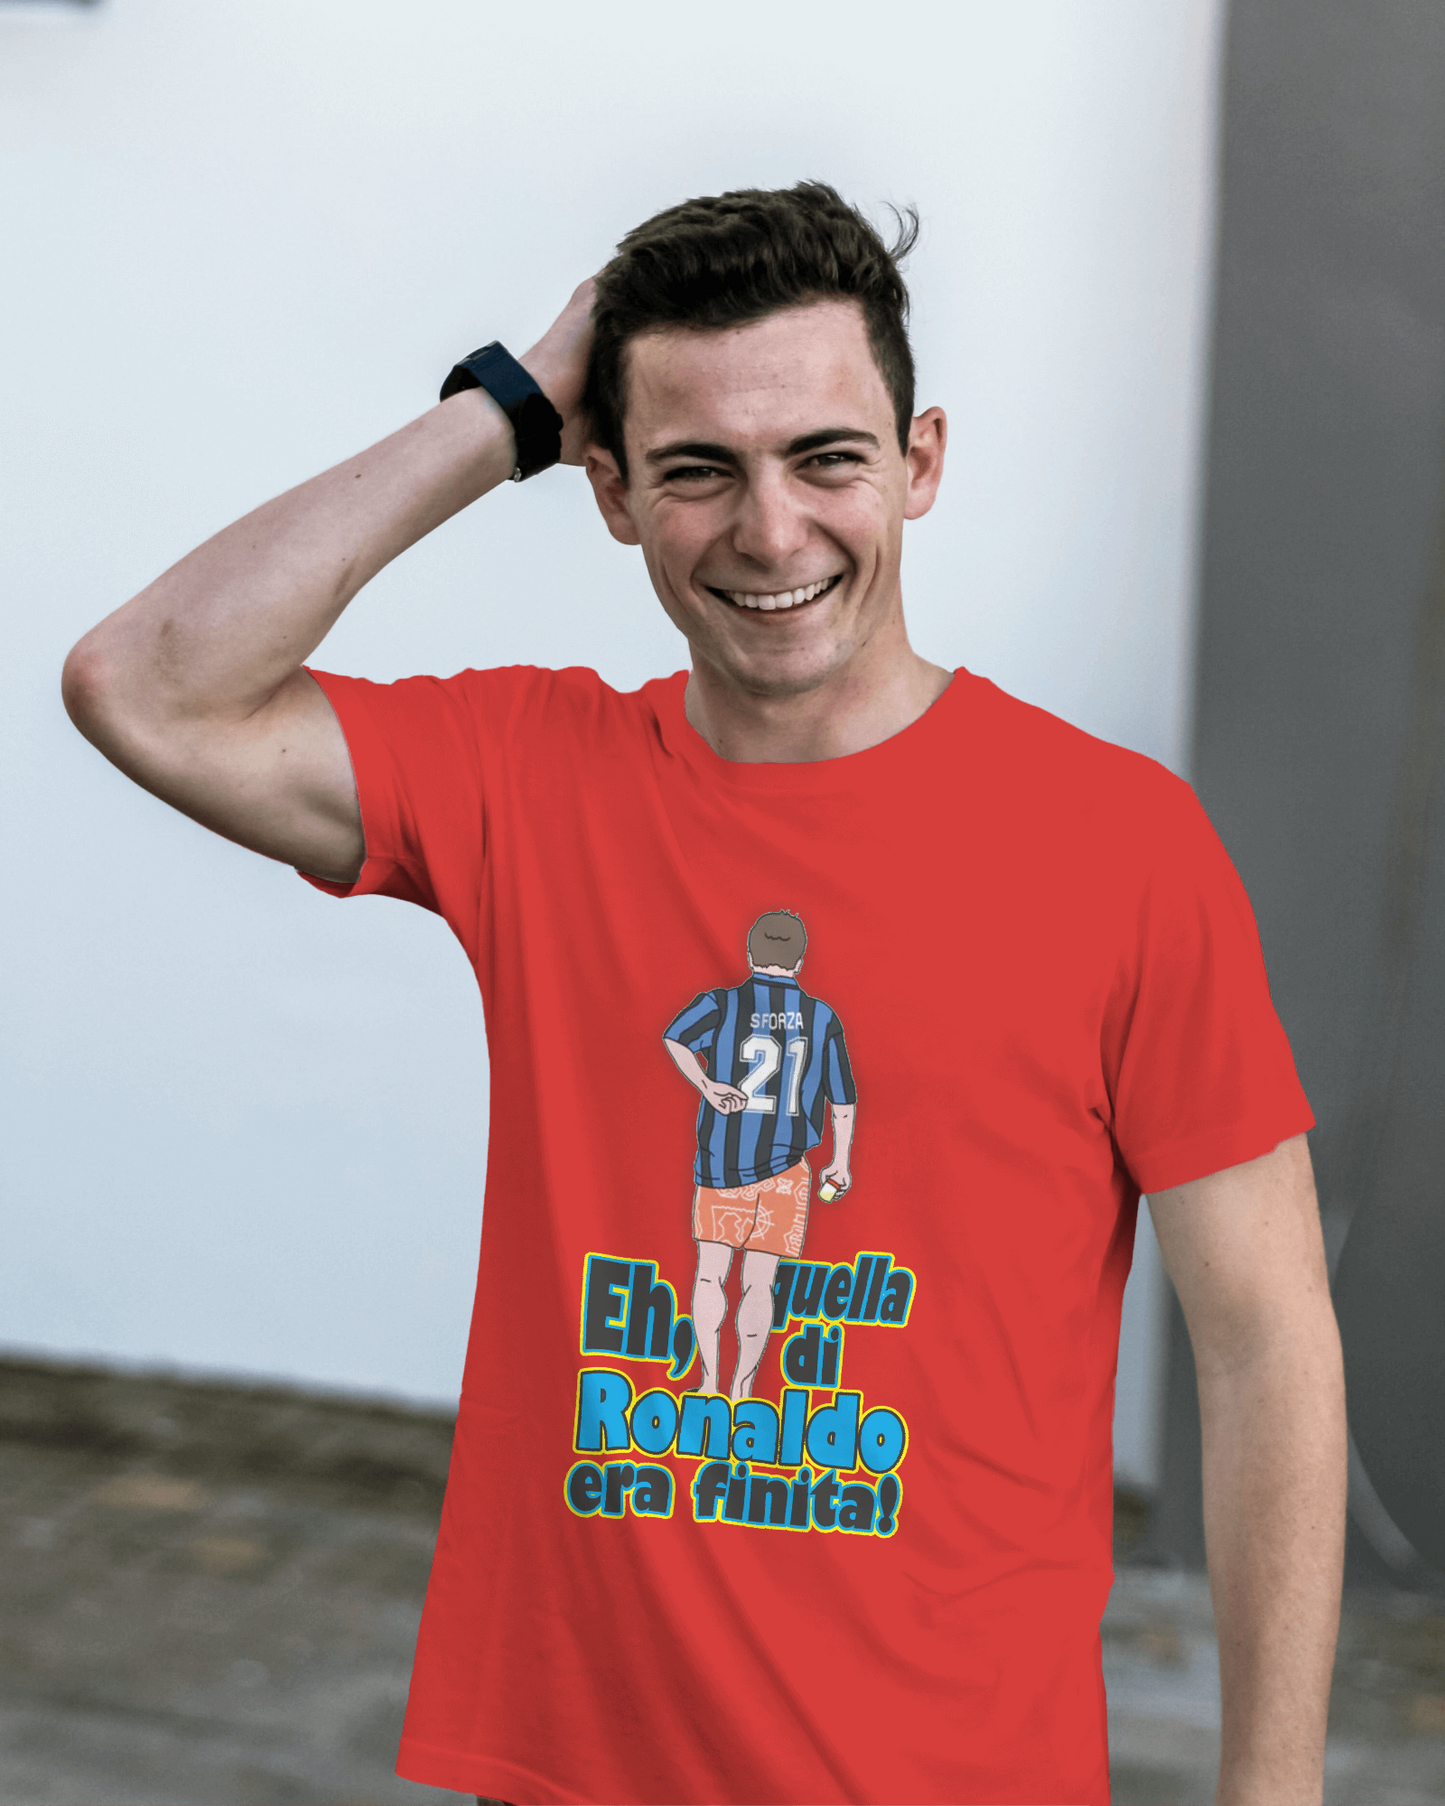 Maglietta unisex 100% cotone organico Stampa "quella di Ronaldo era finita"